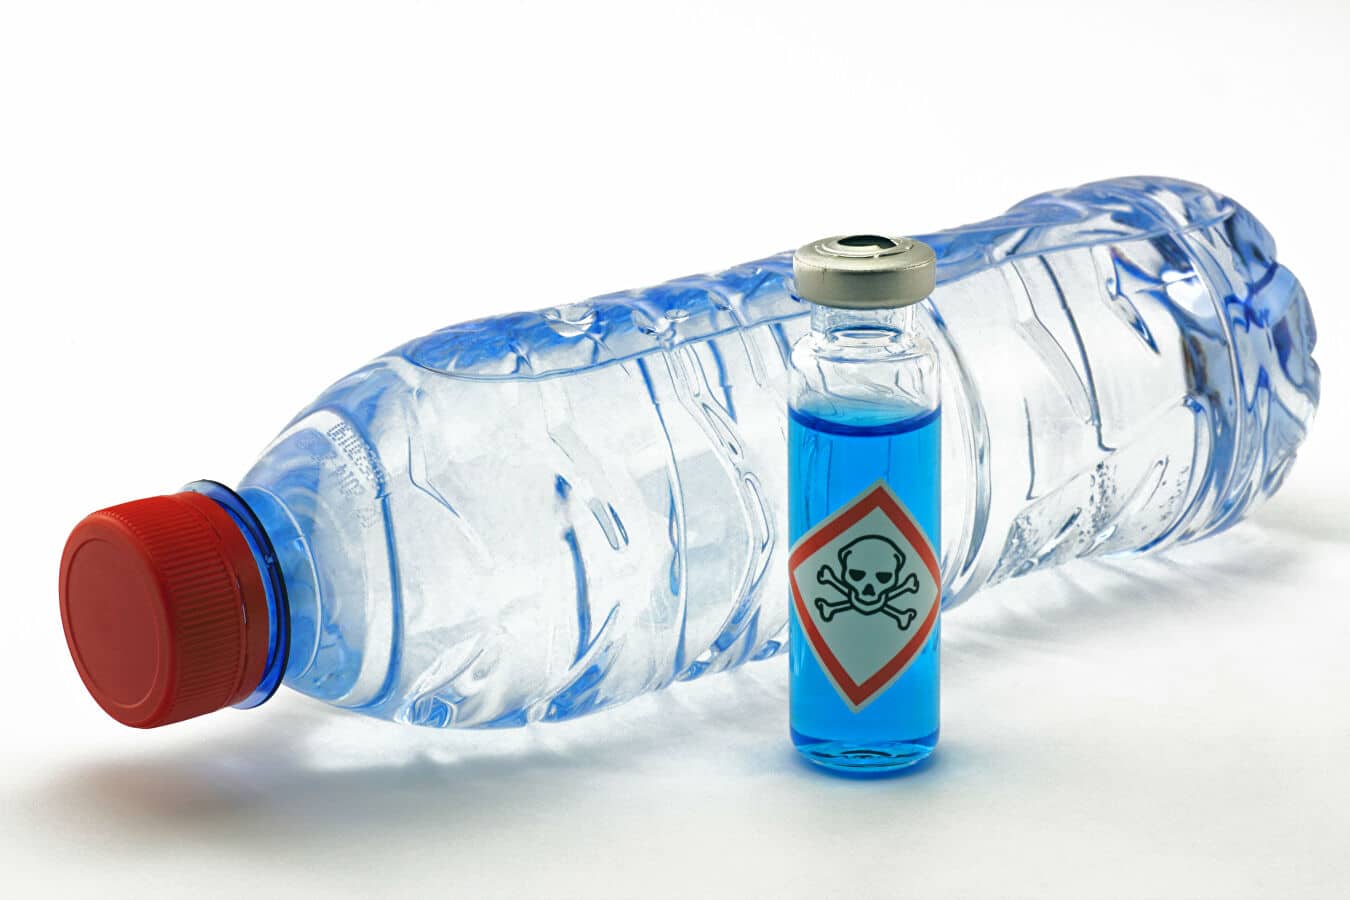 لا تحفظوا ماء الشرب بالعبوات البلاستيكية لهذه المدة watanserb.com